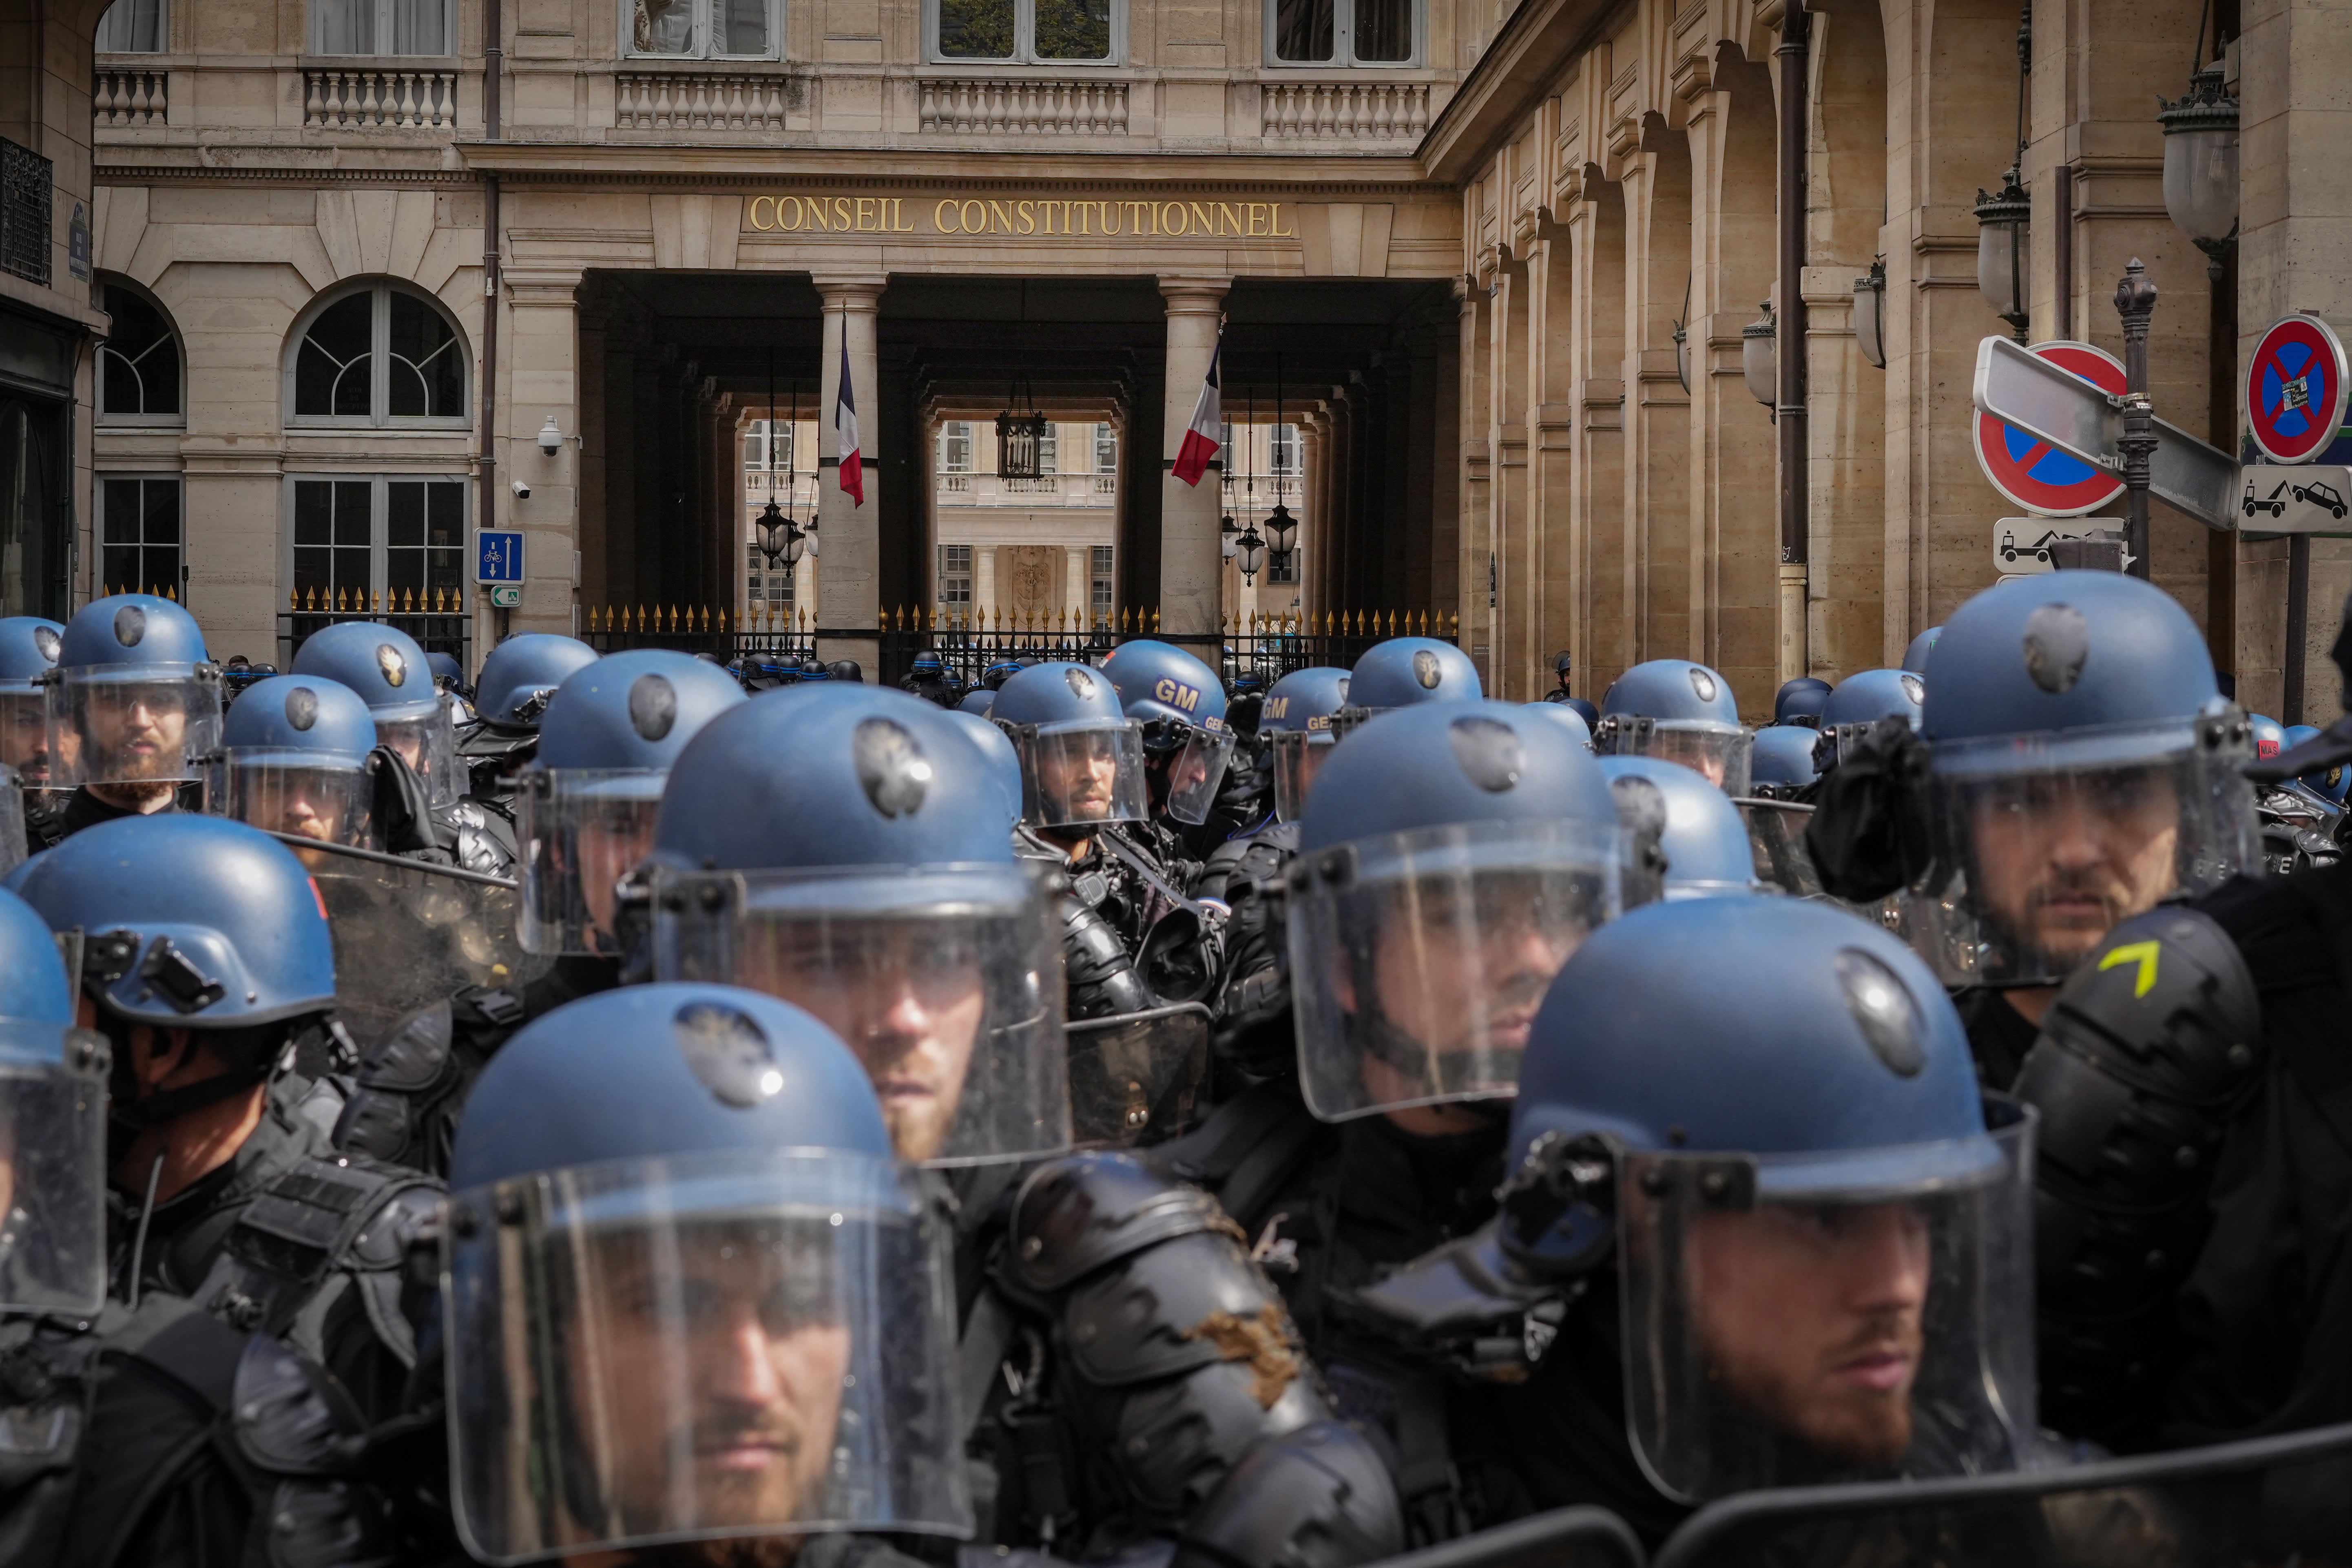 Francijas tiesa nolēma palielināt pensionēšanās vecumu, un visā valstī notiek protesti